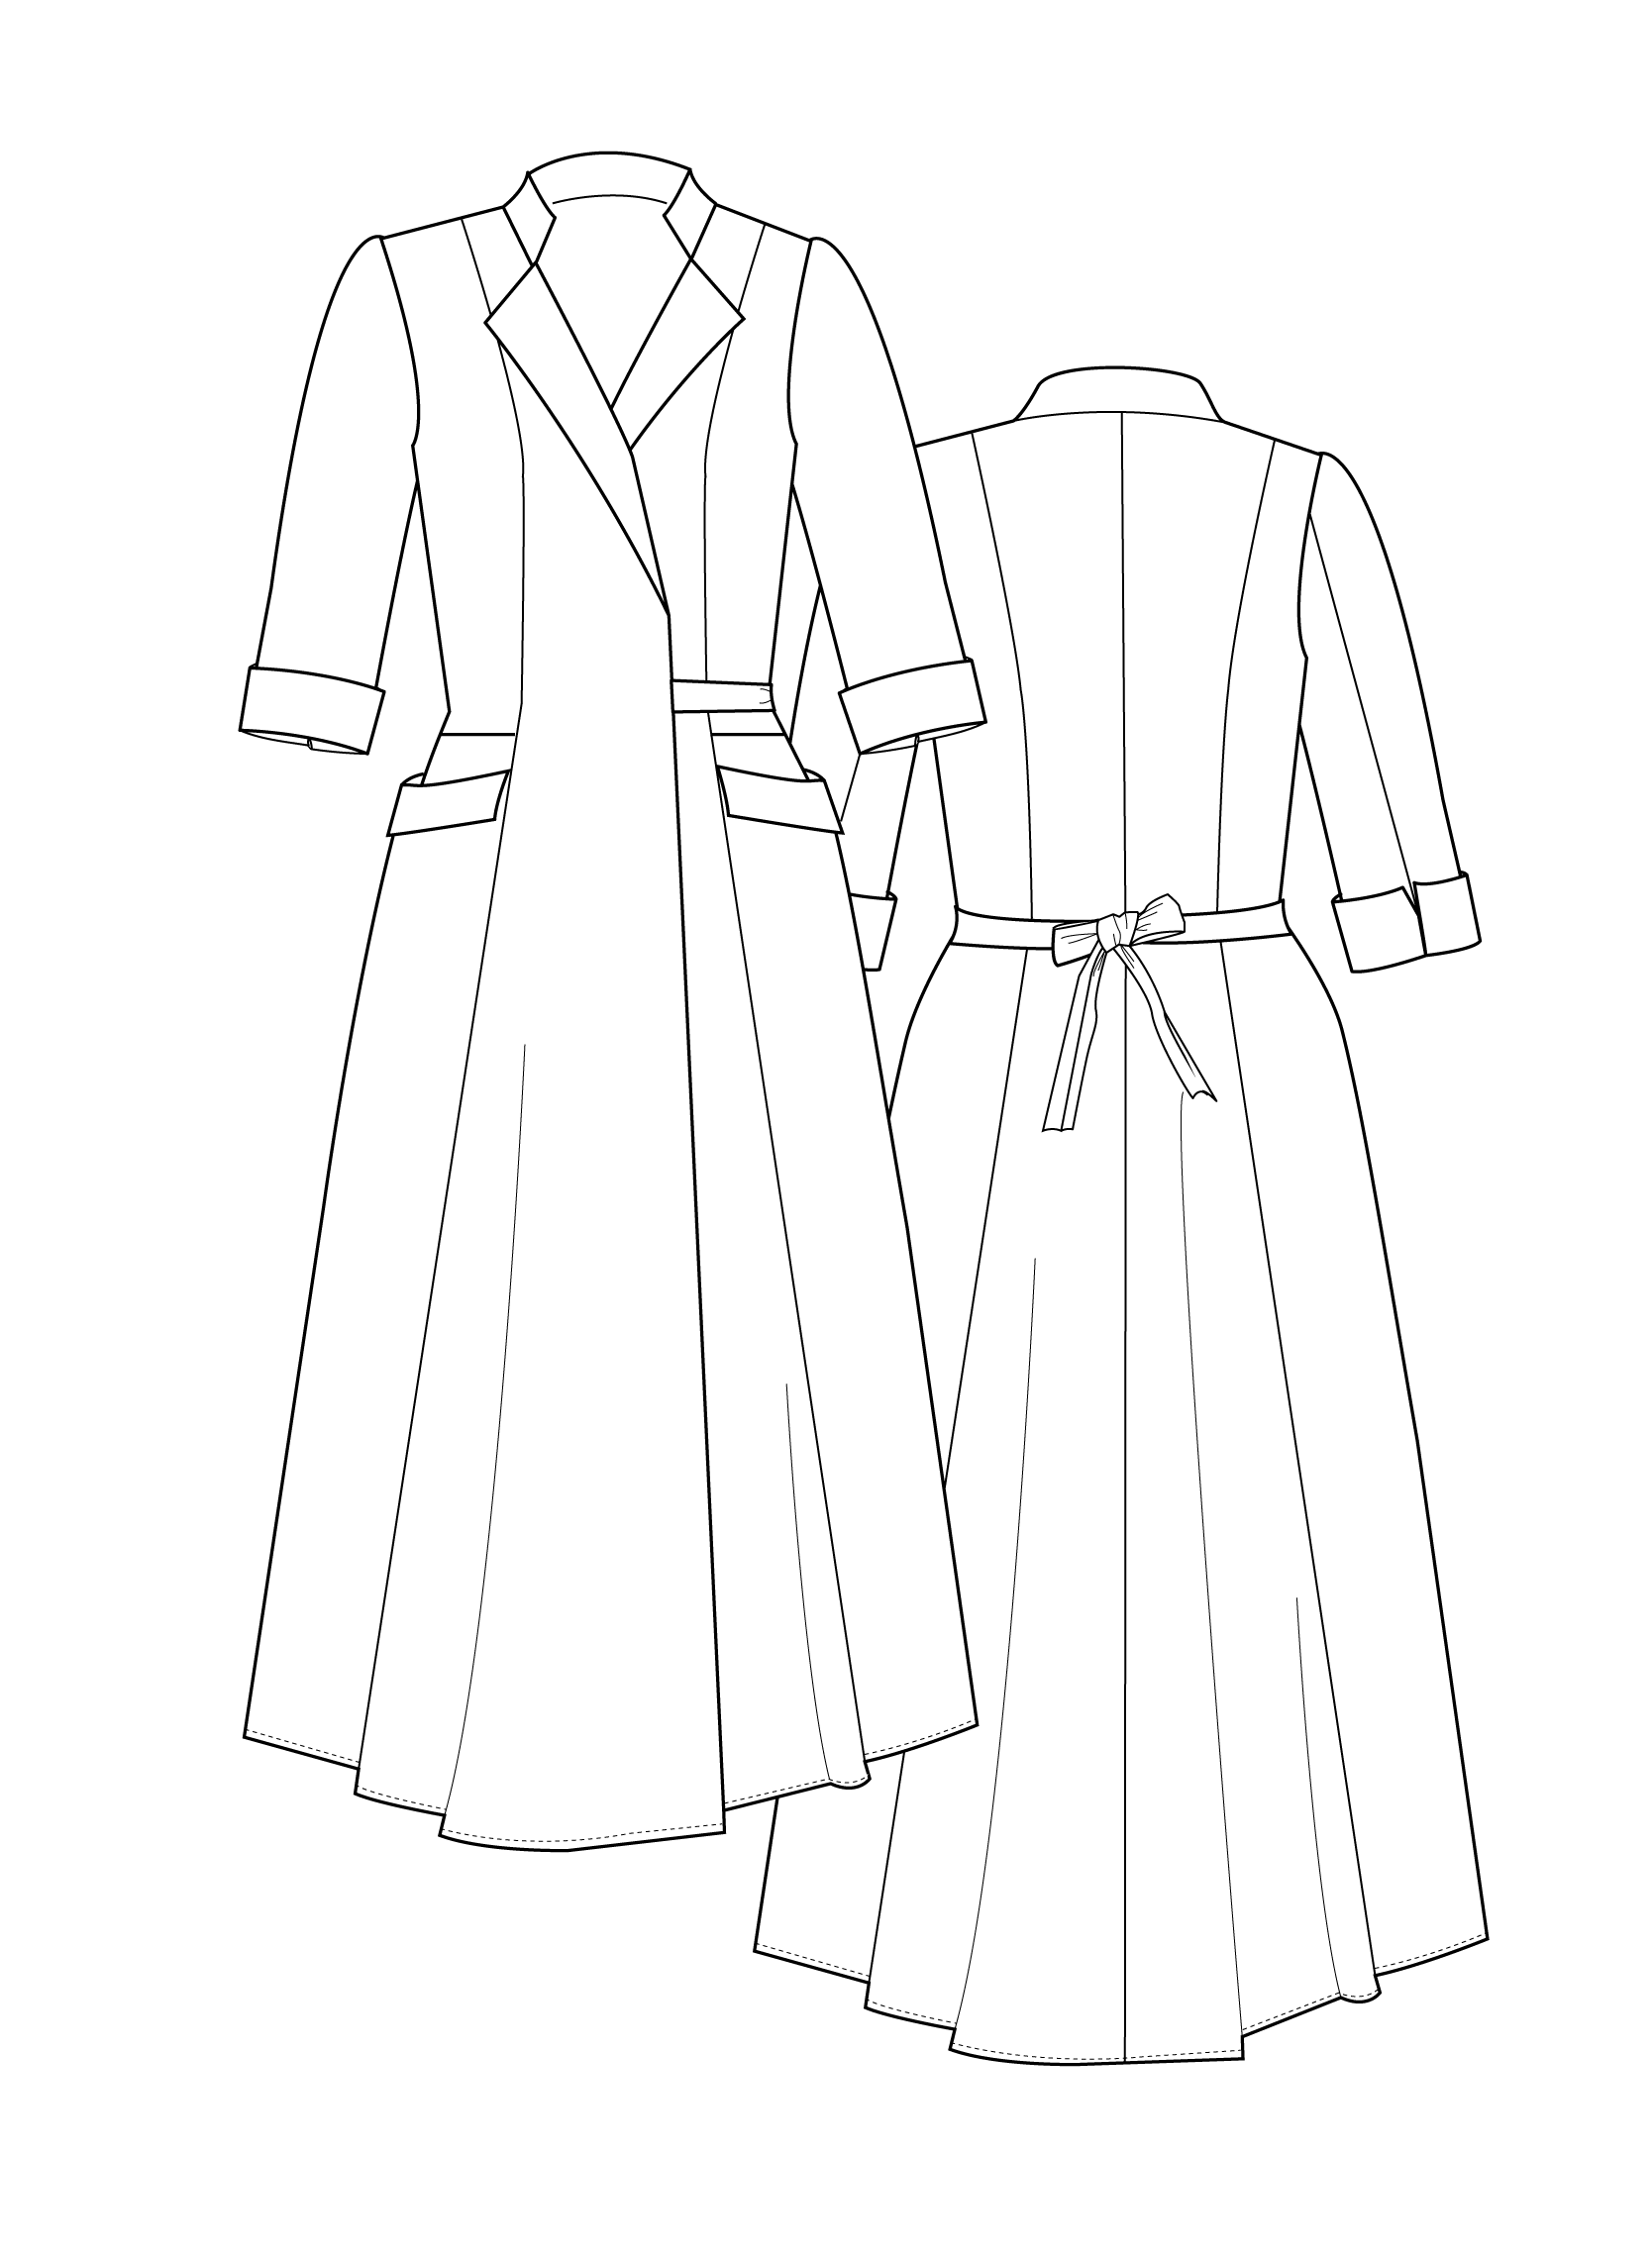 How to Do Fashion No. 21 Casablanca Dress